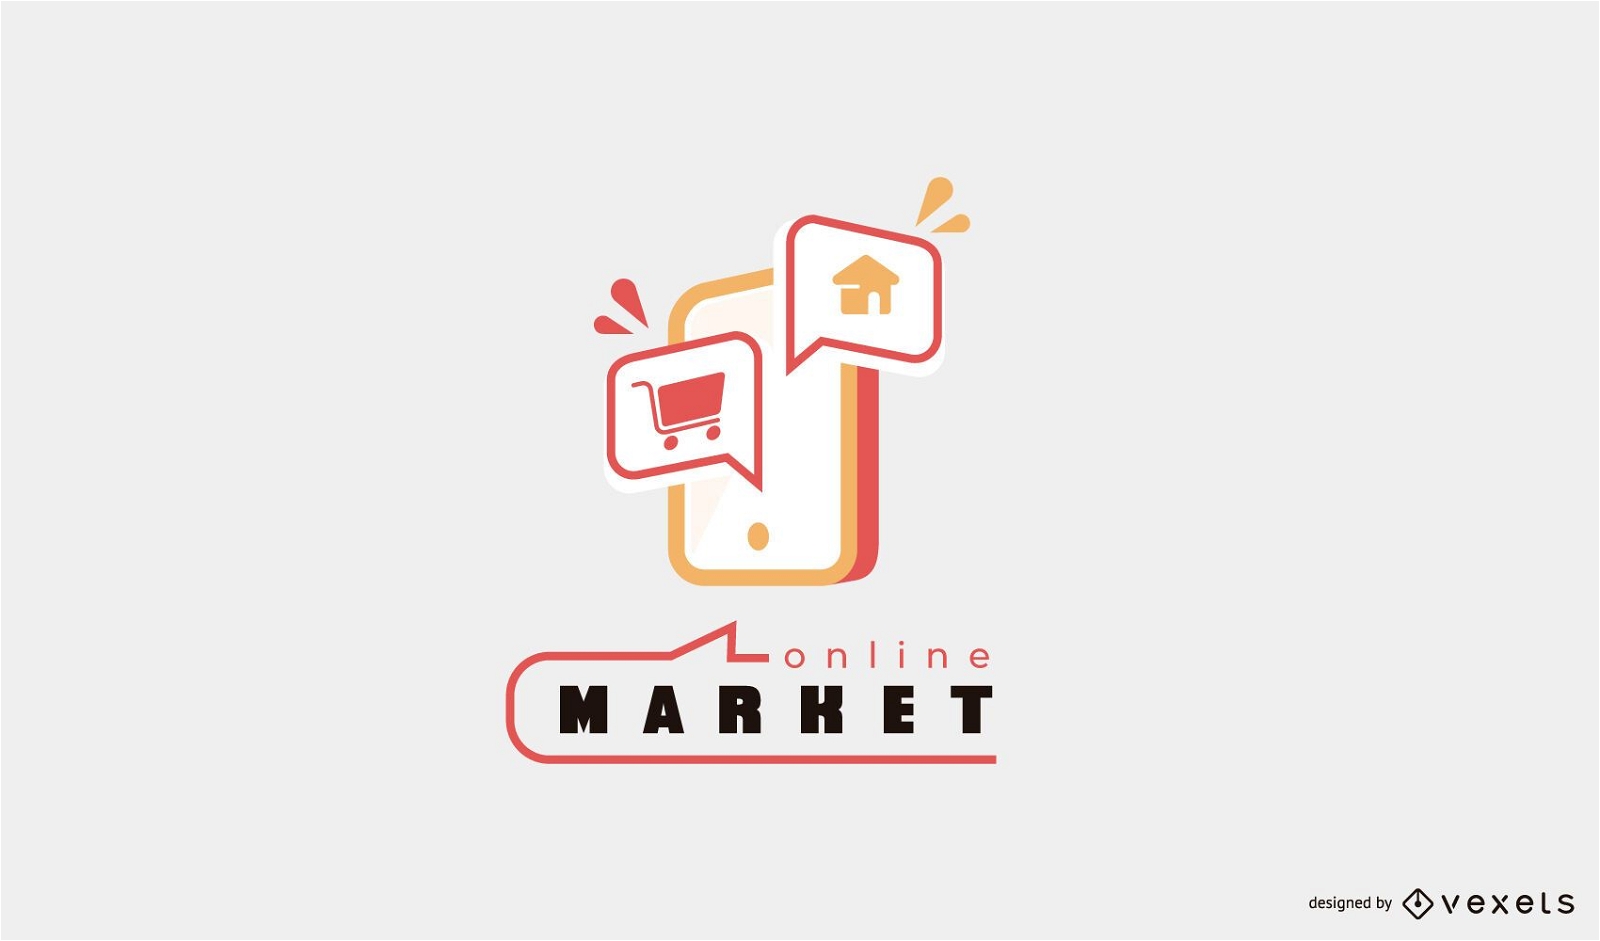  Online Market